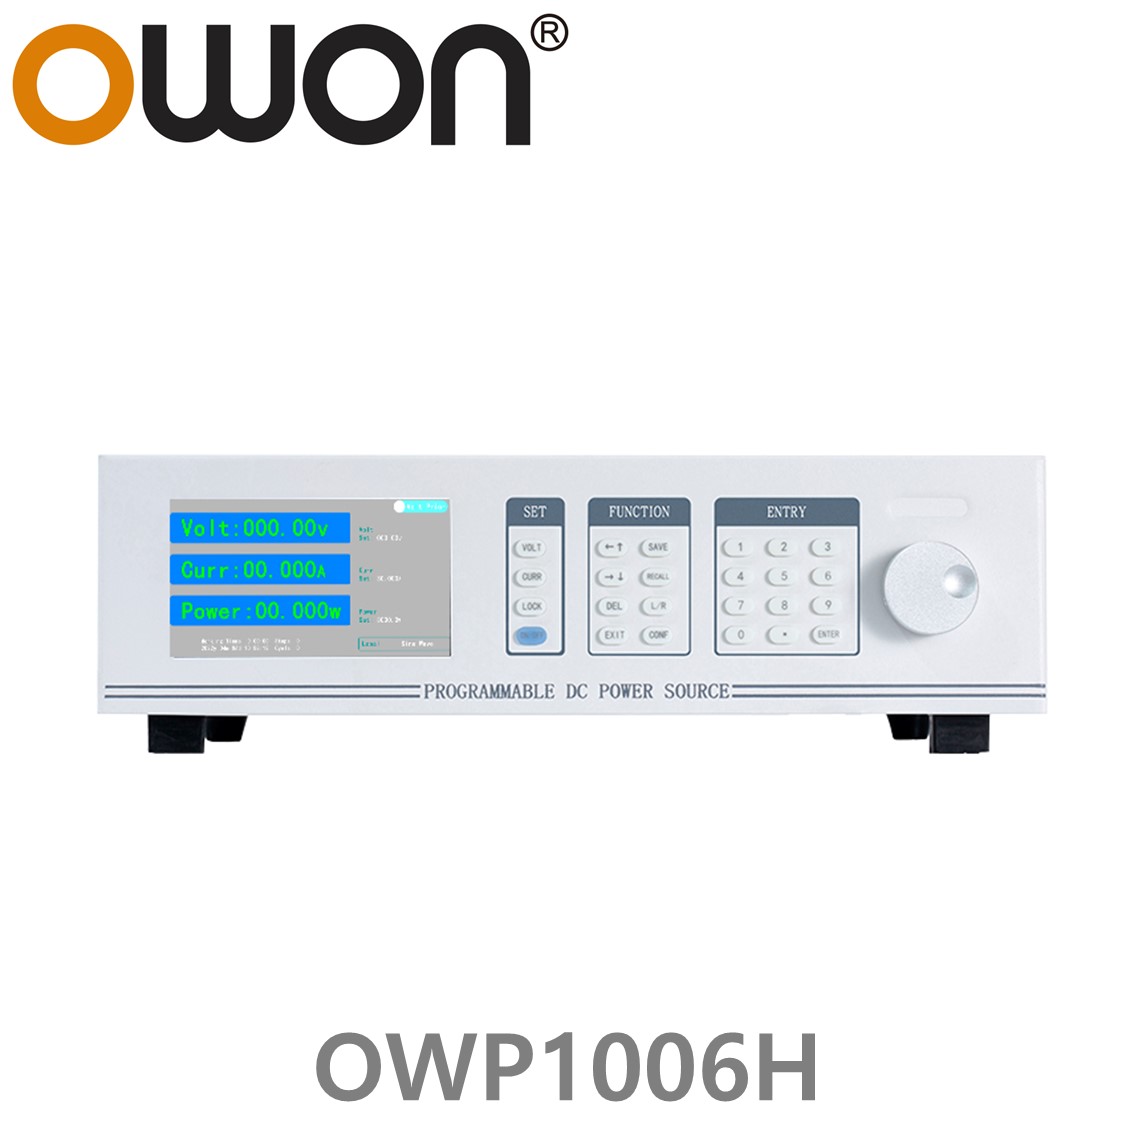 [ OWON ] OWP1006H 고전력 DC파워서플라이, 0-60.000V / 0-30.000A / 1000.0W DC전원공급장치